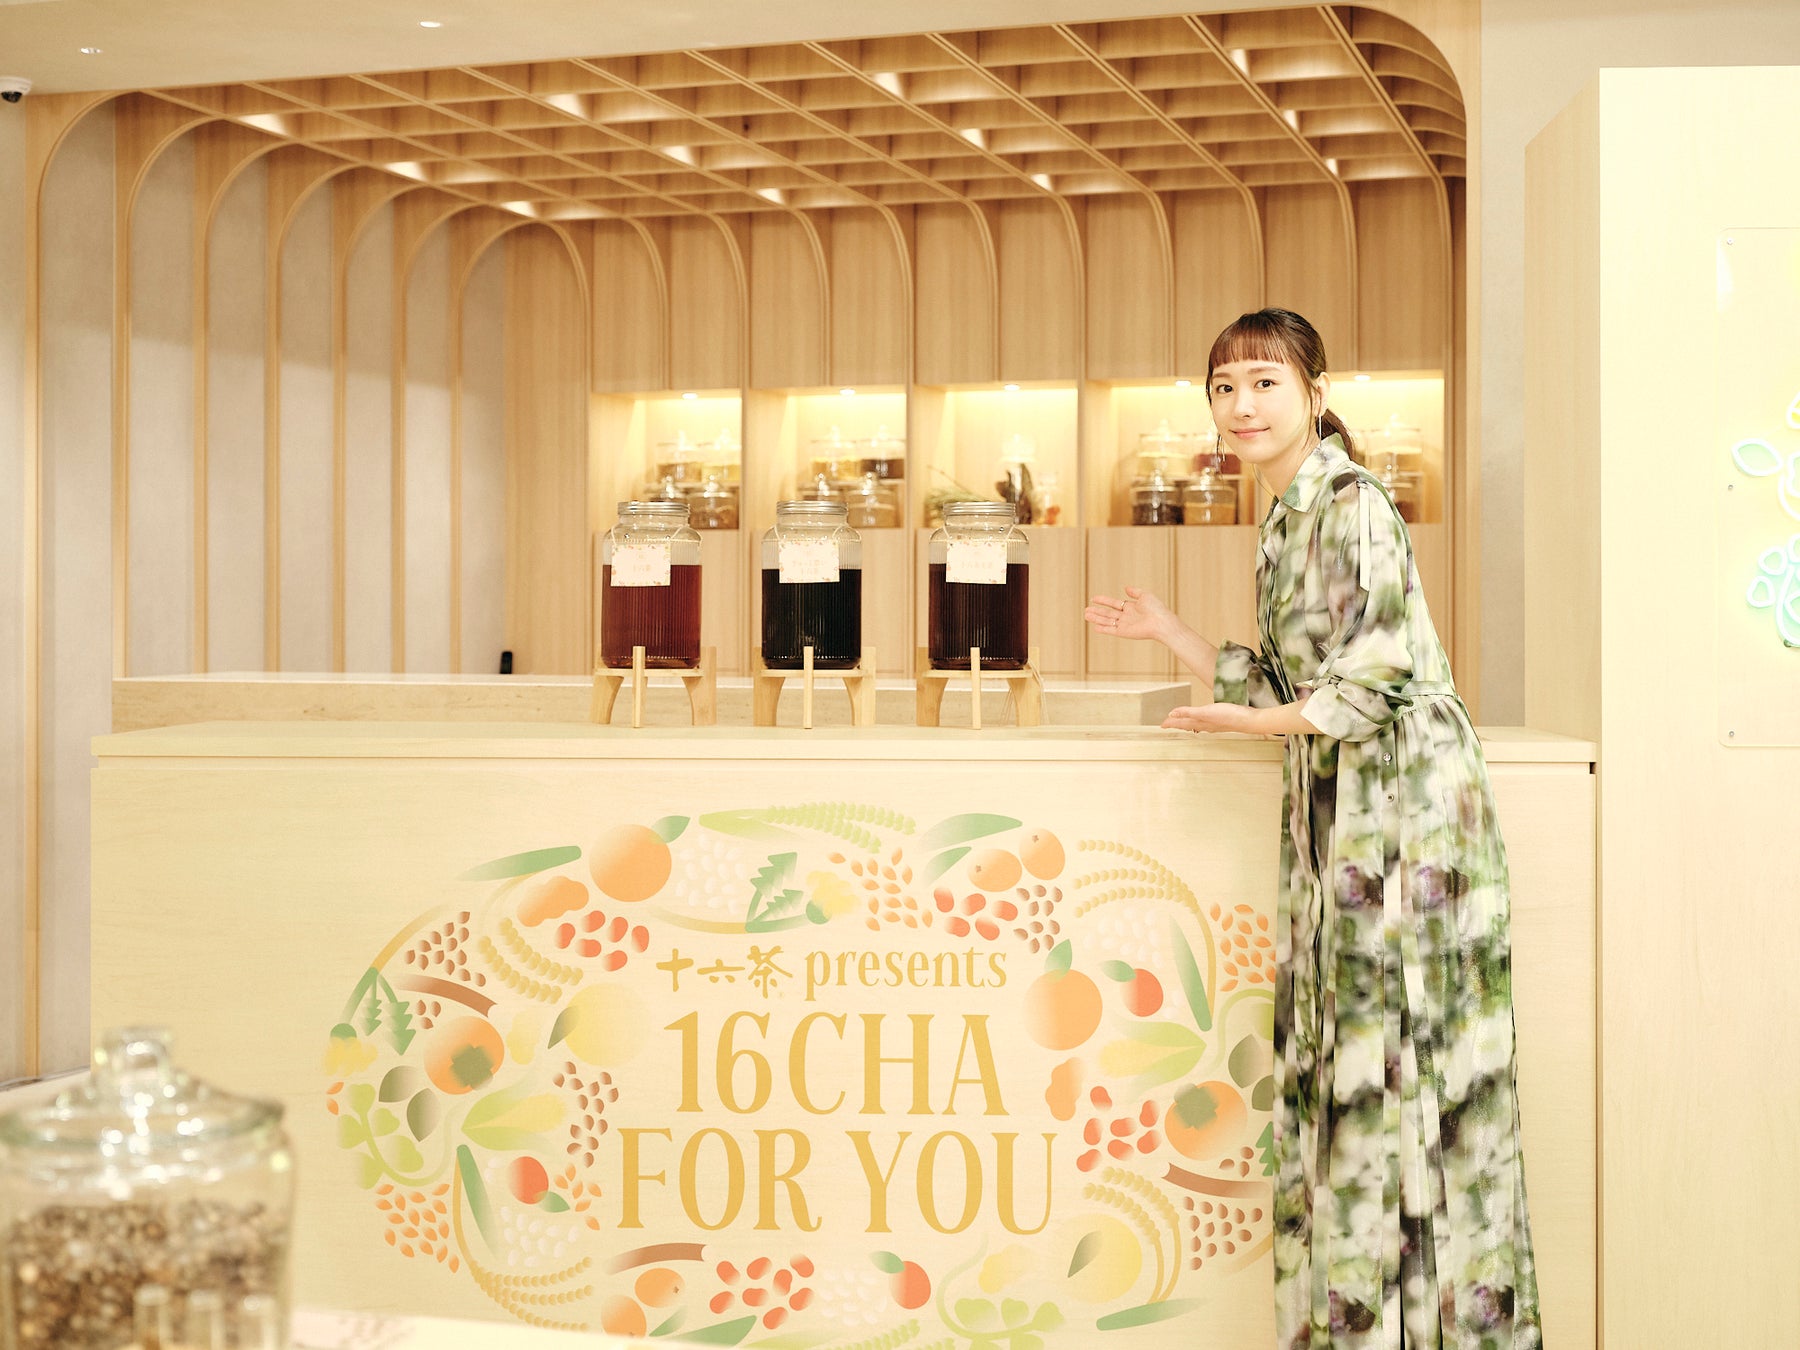 『アサヒ 十六茶』体験型ポップアップショップ・十六茶 presents 「16CHA FOR YOU」のお客様第１号に、女優・...